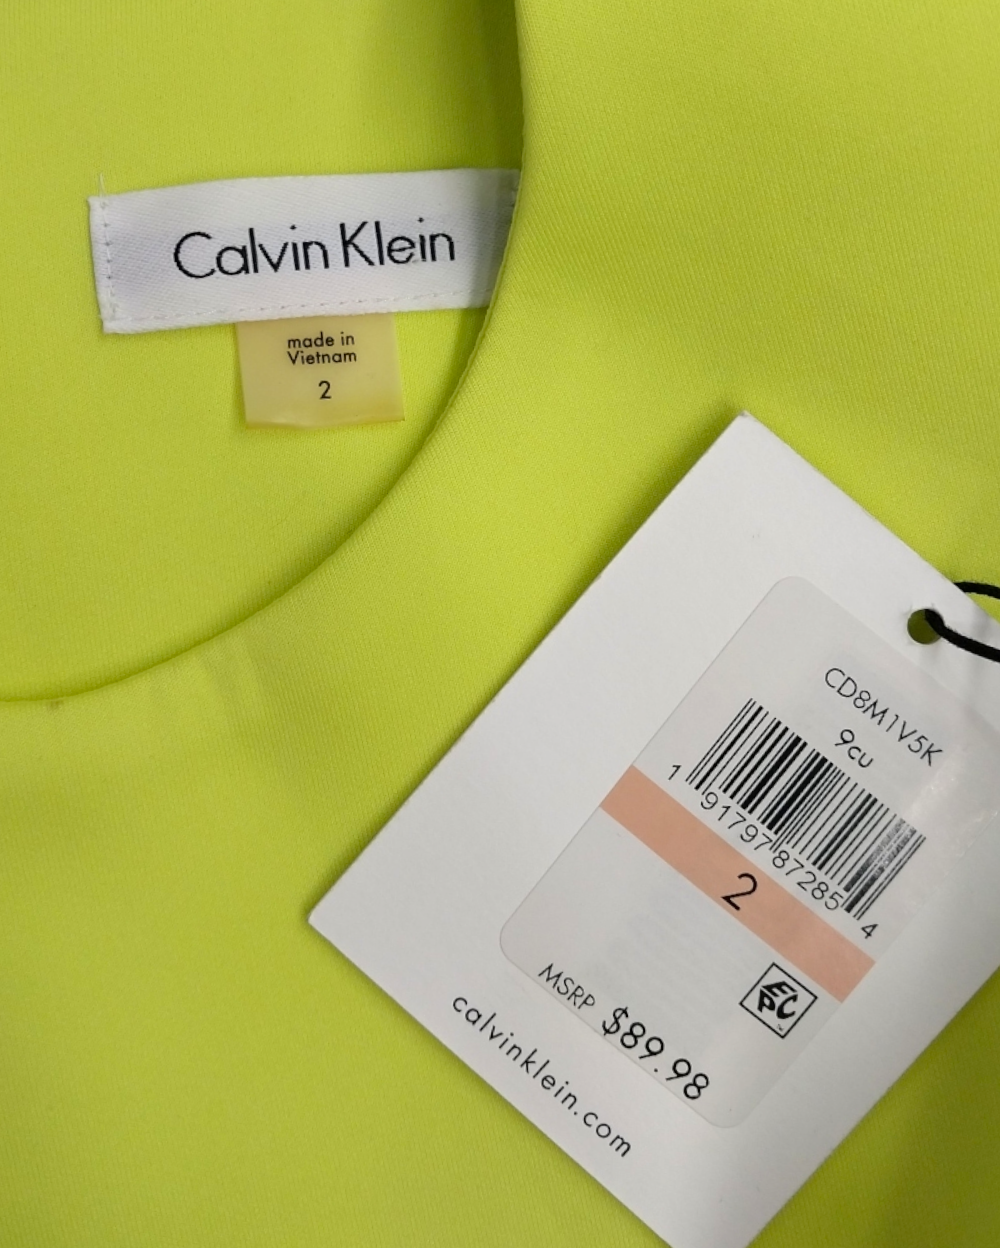 Vestidos Cortos Calvin Klein